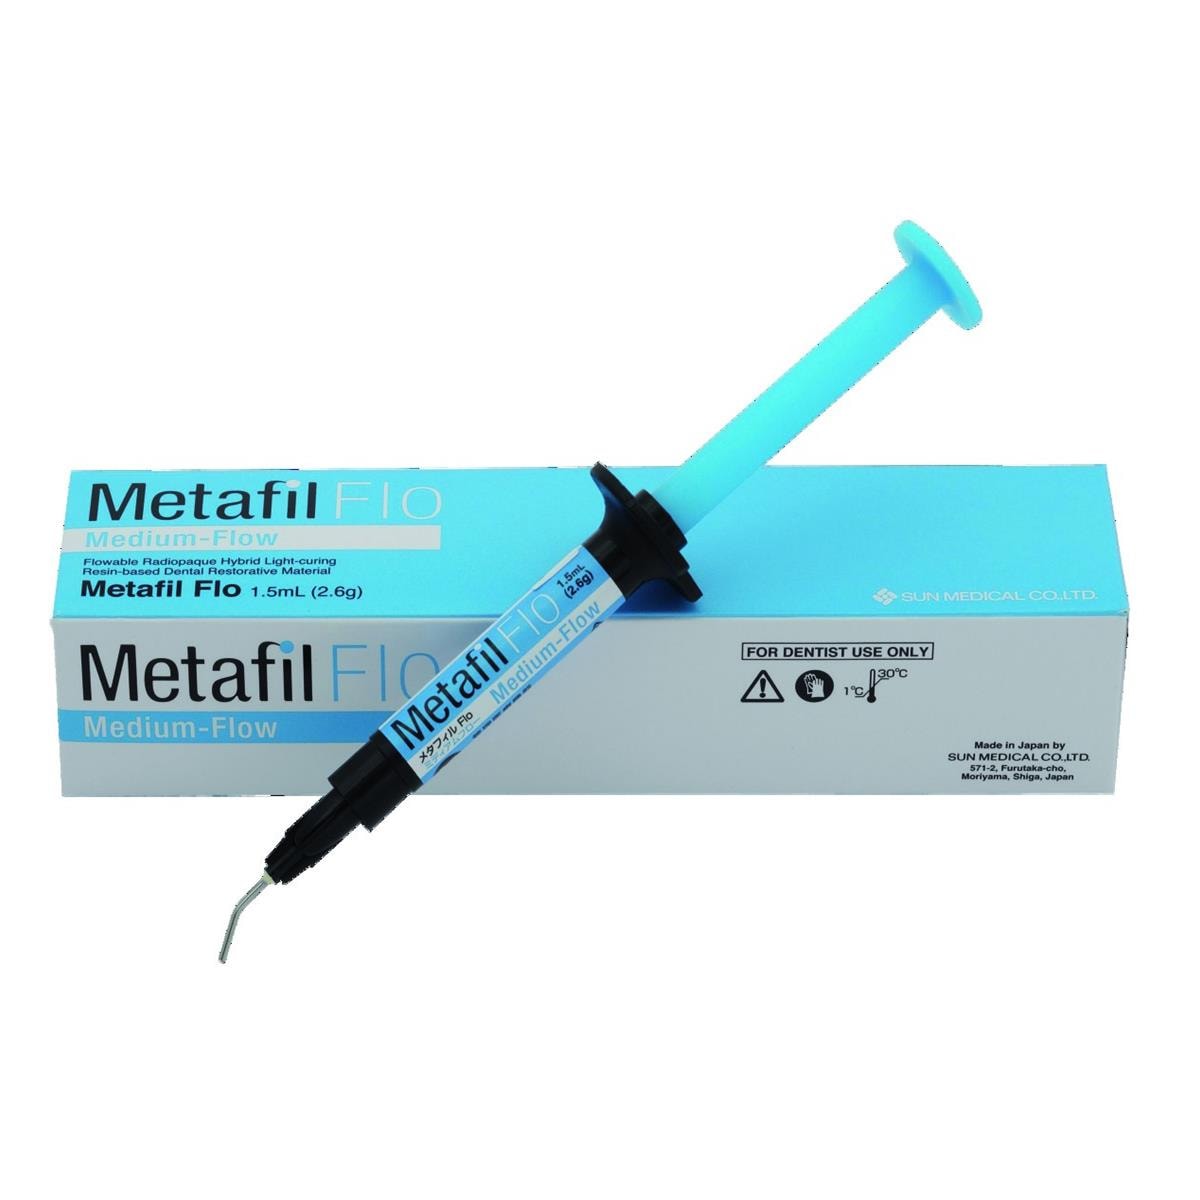 Metafil Flo SUN MEDICAL - A3 - Seringue de 3g